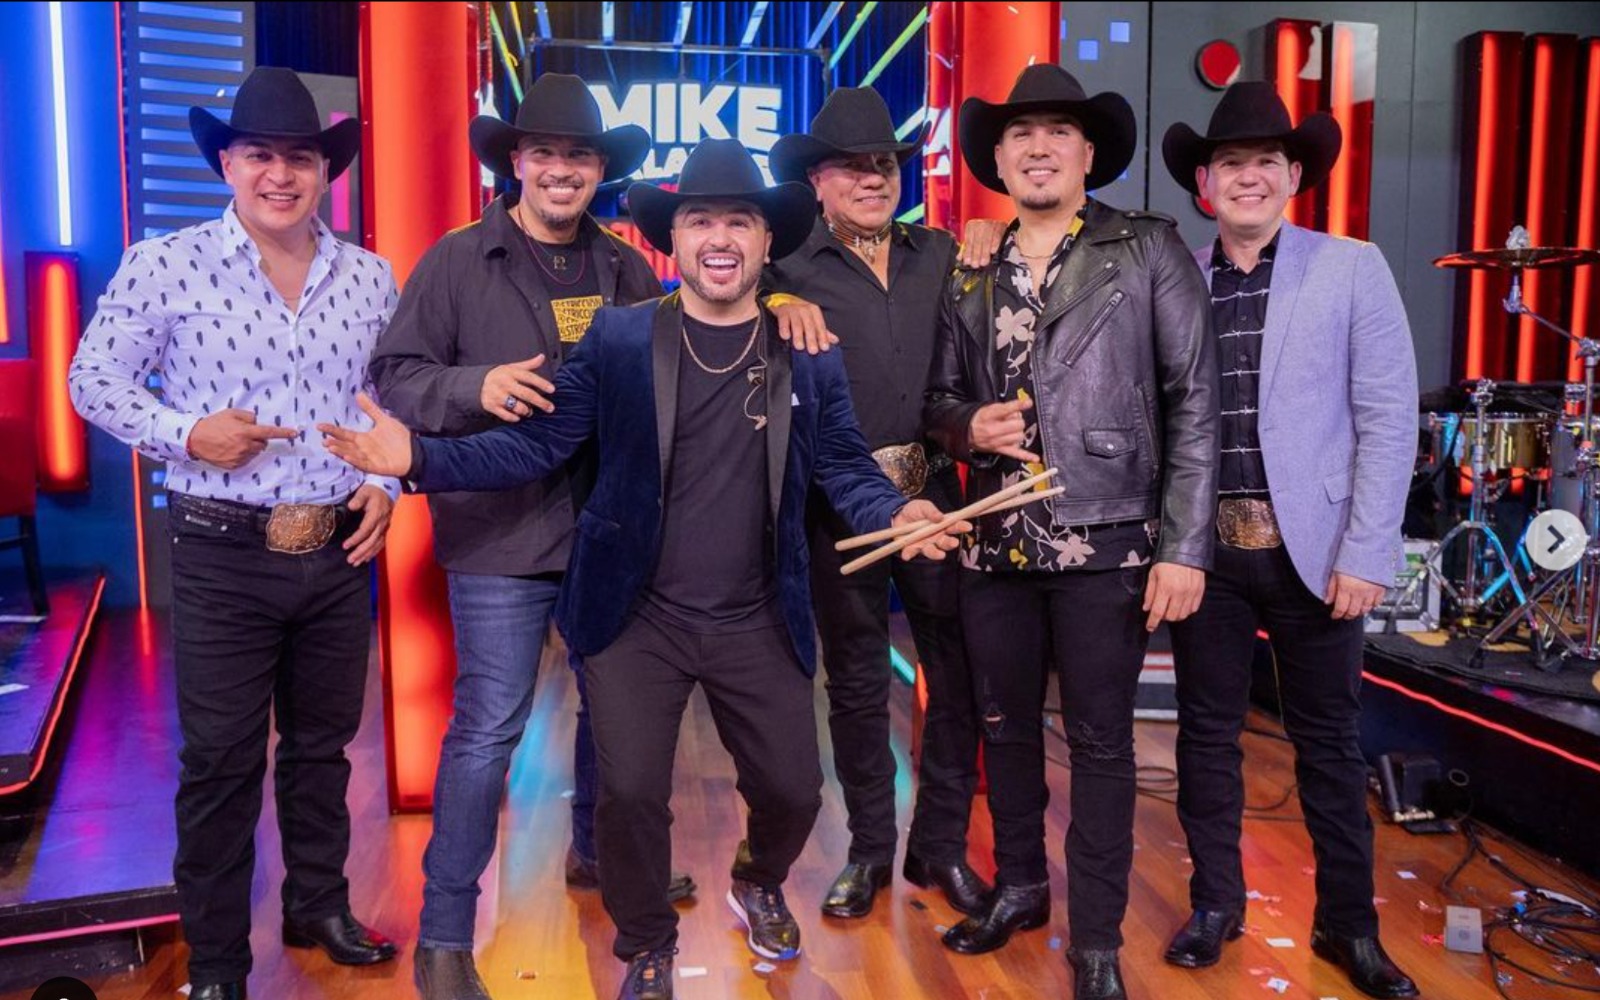 Bronco: El grupo mexicano más exitoso llega a Perú para celebrar 45 años de formación